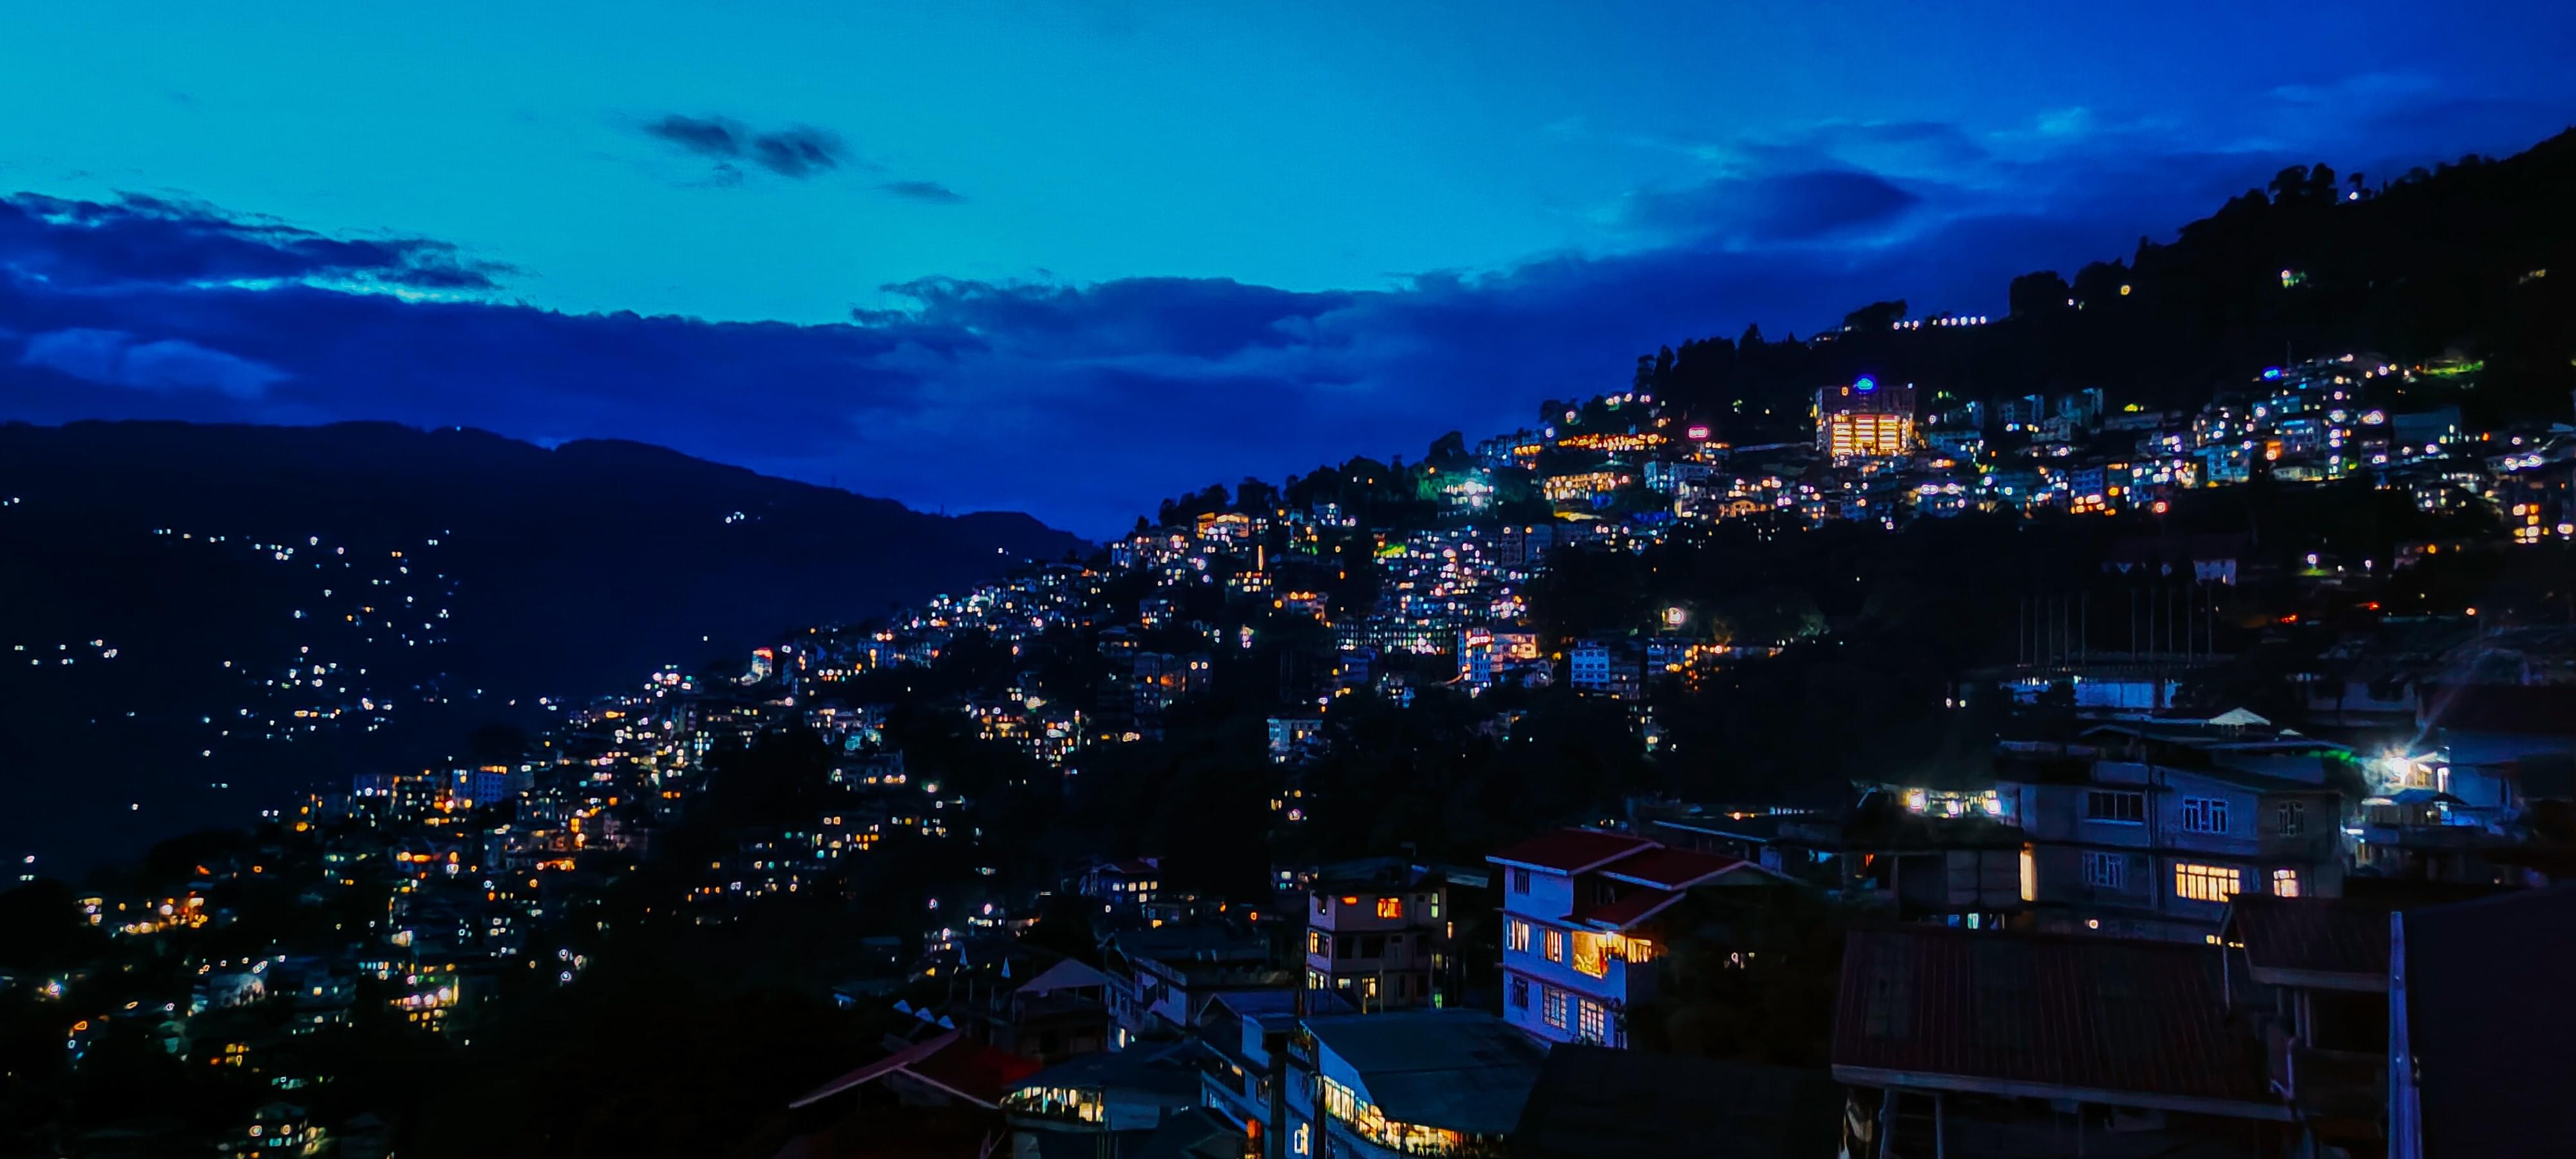 Darjeeling Packages from Jaipur | Get Upto 50% Off